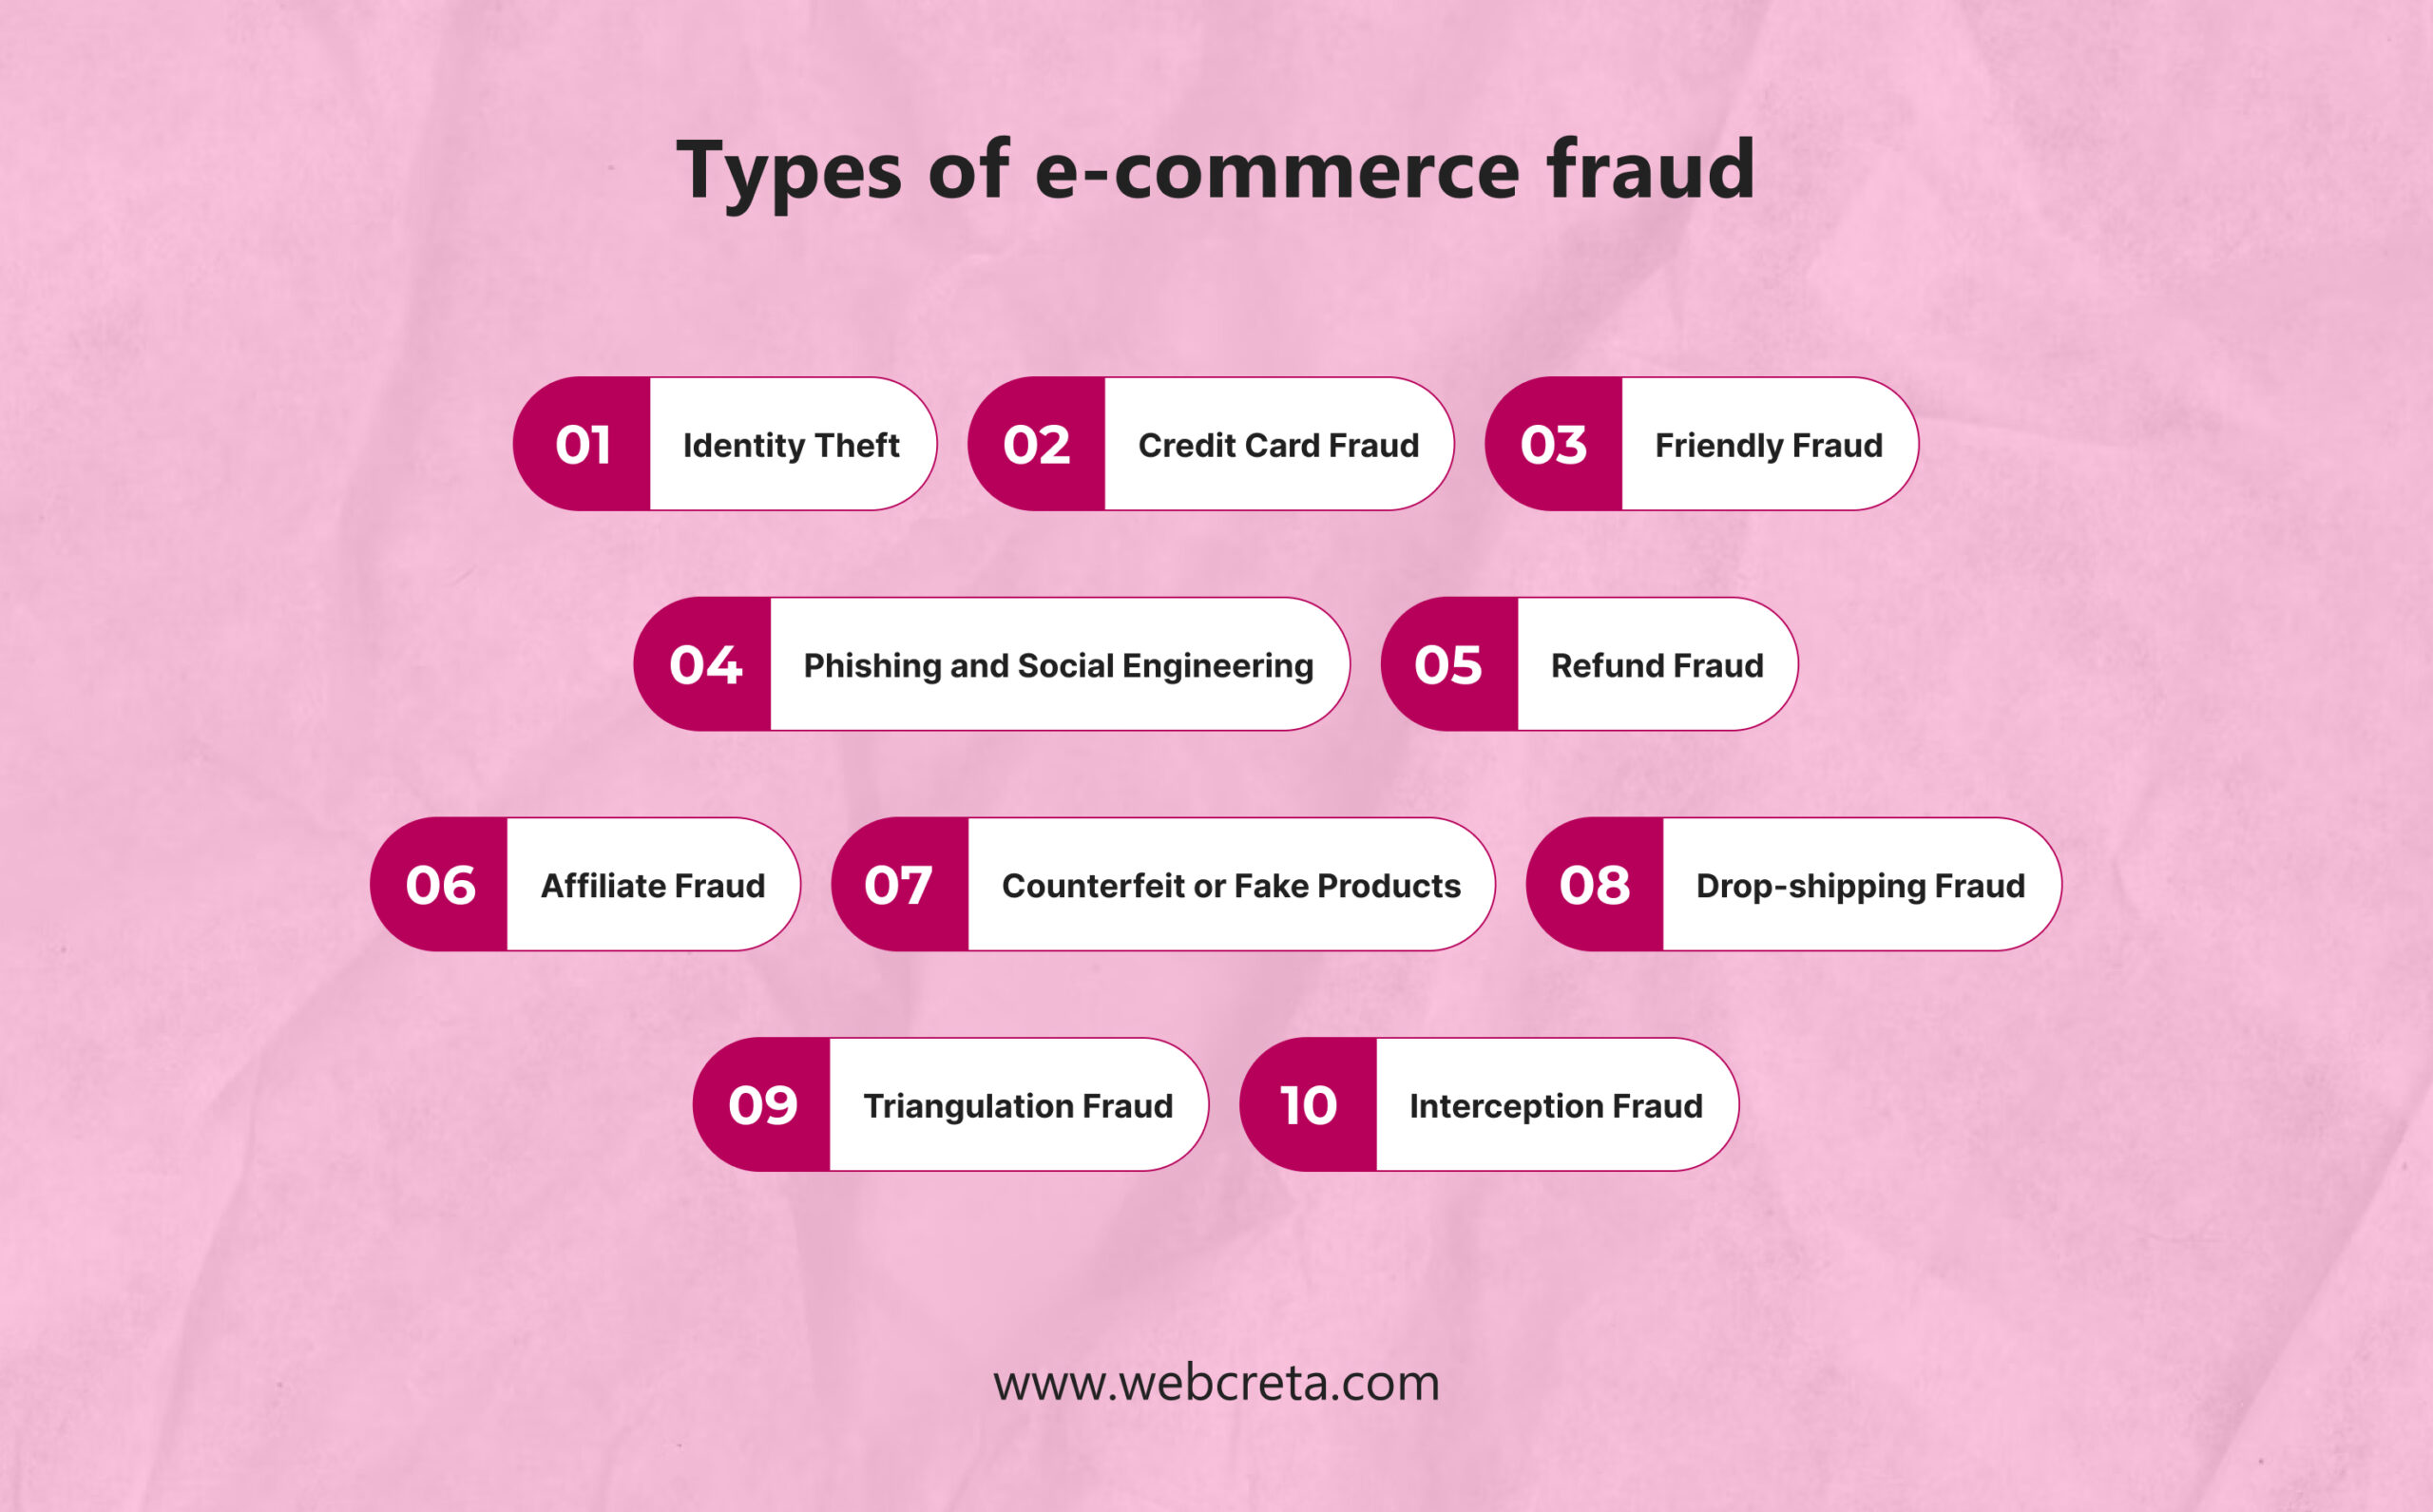 Types of e-commerce fraud